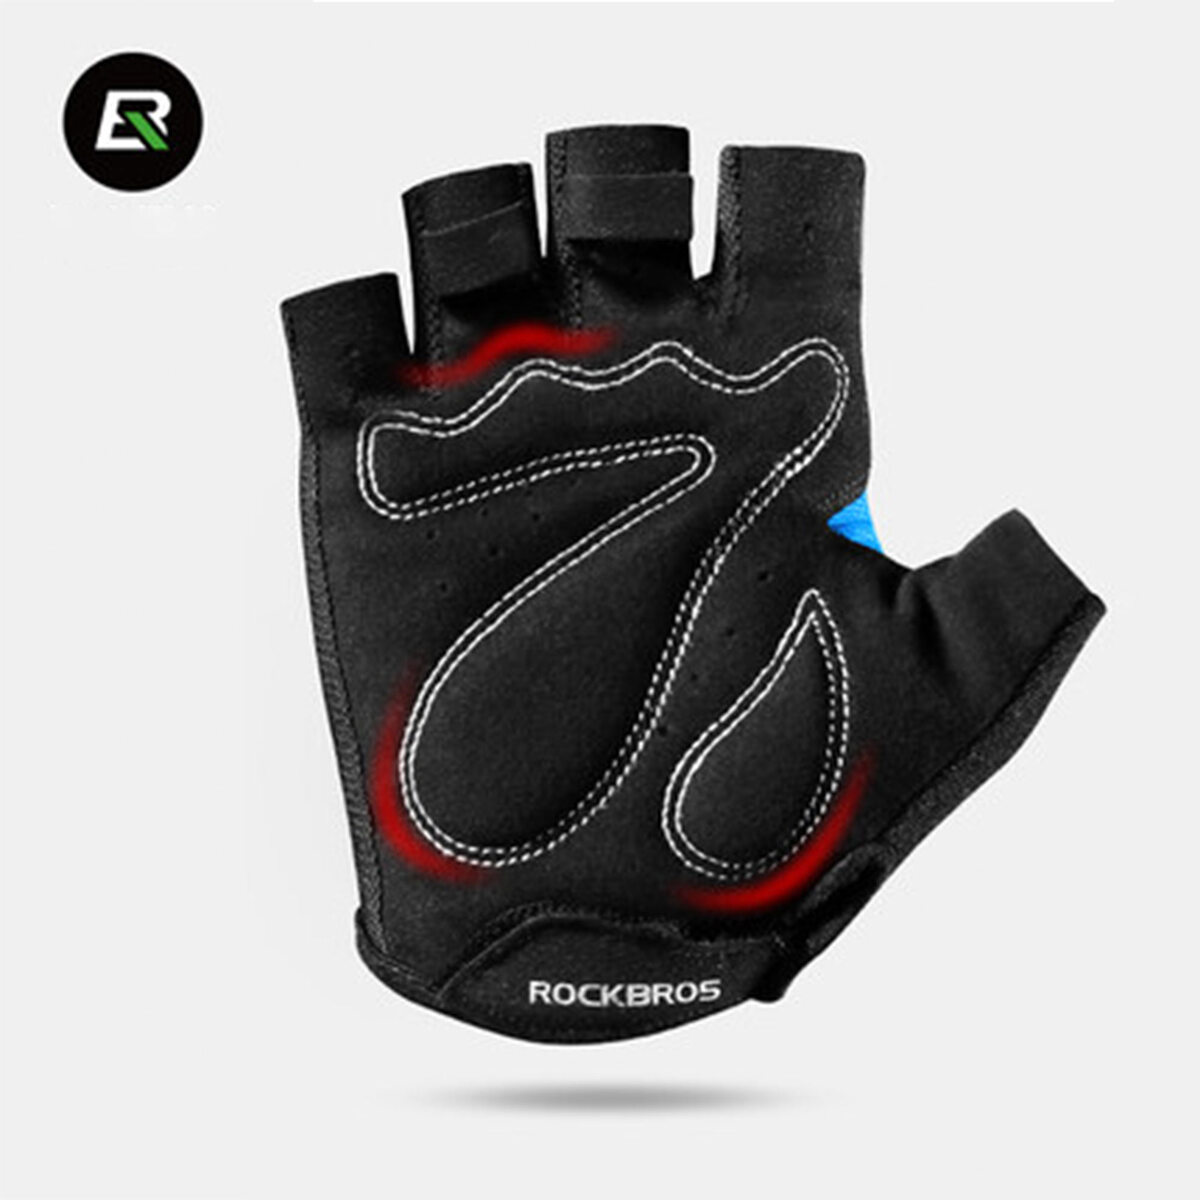 ROCKBROS Half Finger Cycling Gloves Blue S099BL Large